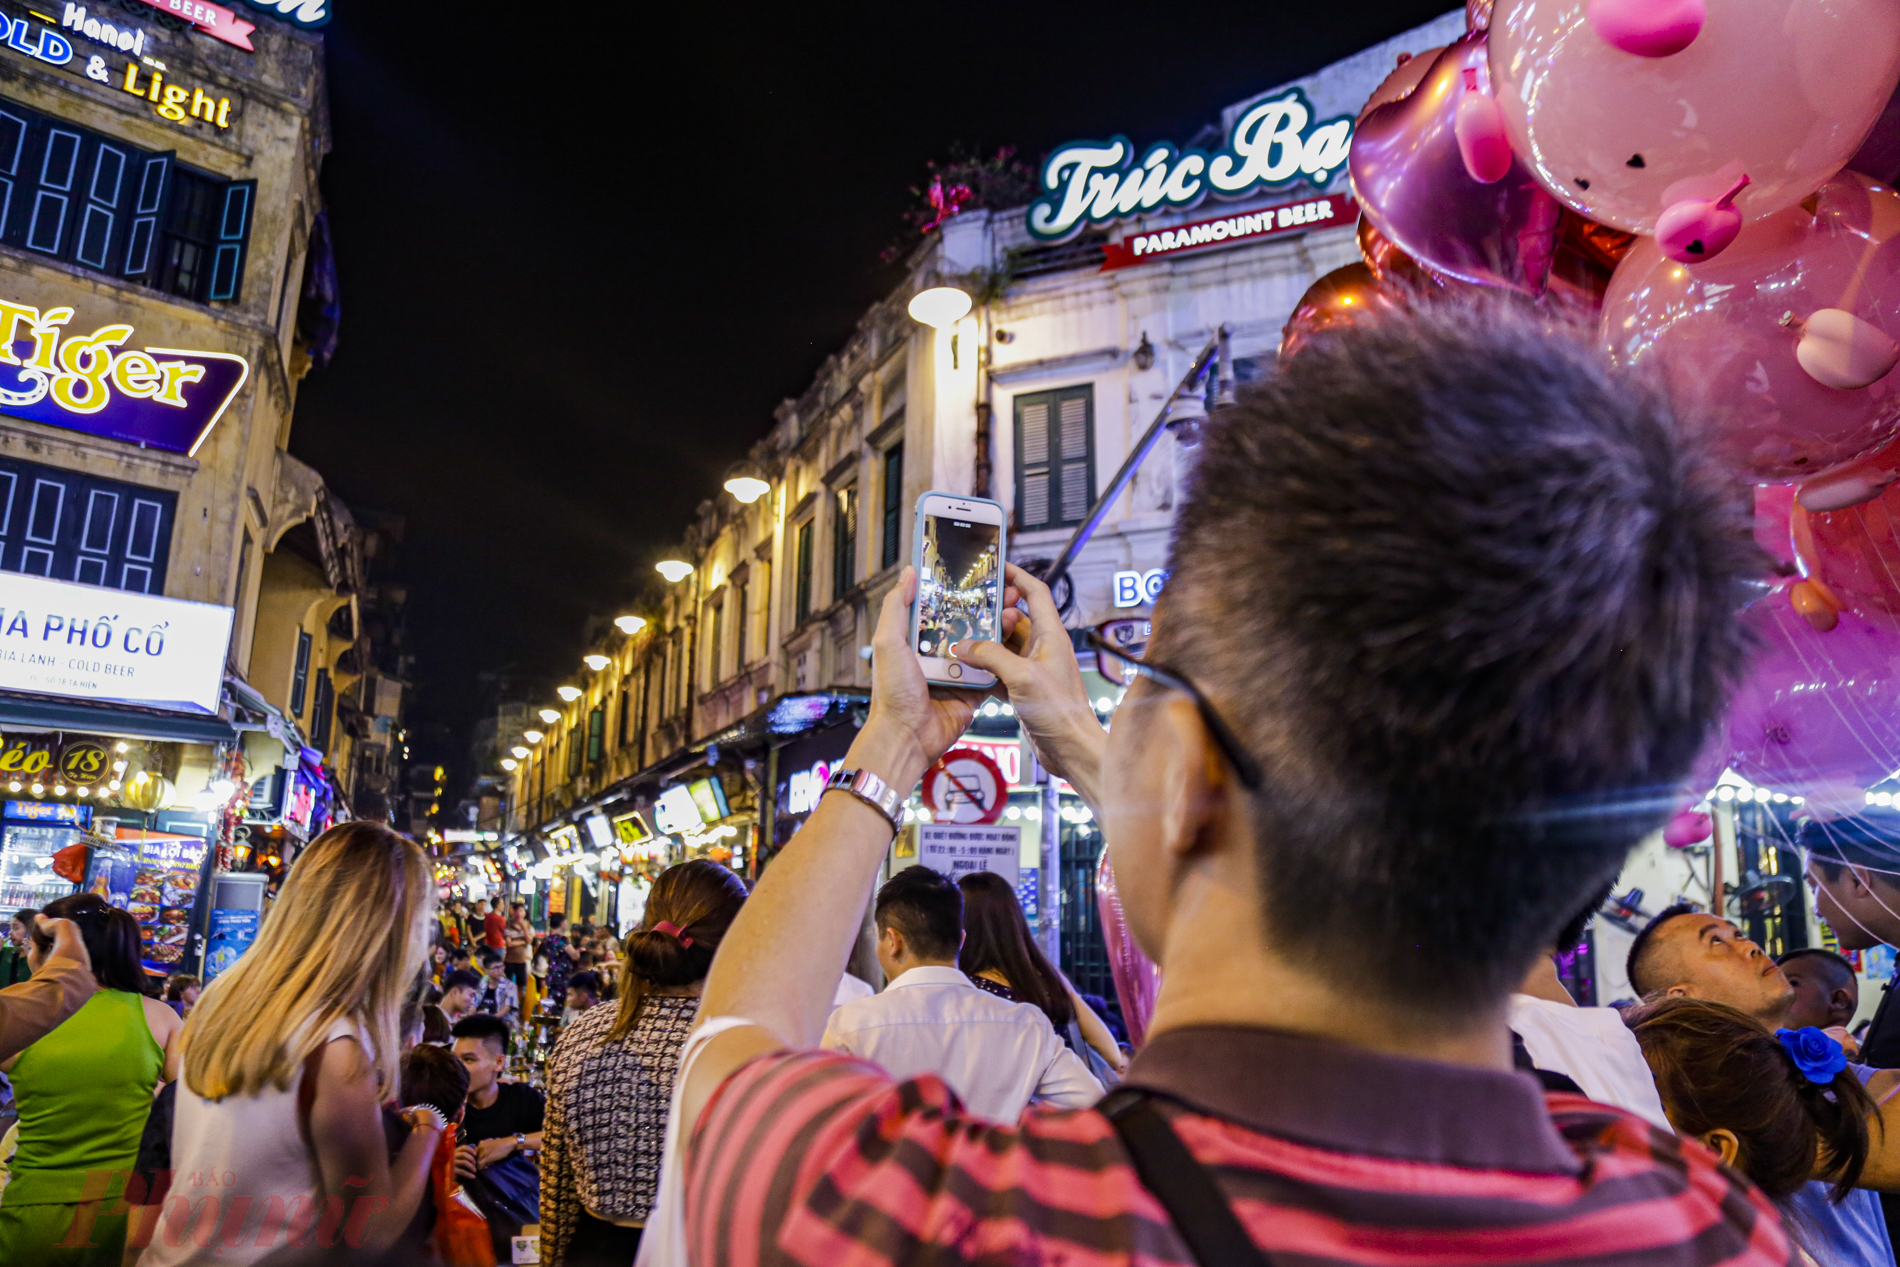 Du khách nước ngoài ghi lại những hình ảnh náo nhiệt trên 'phố Tây' Tạ Hiện trong buổi khai mạc Worrld Cup.